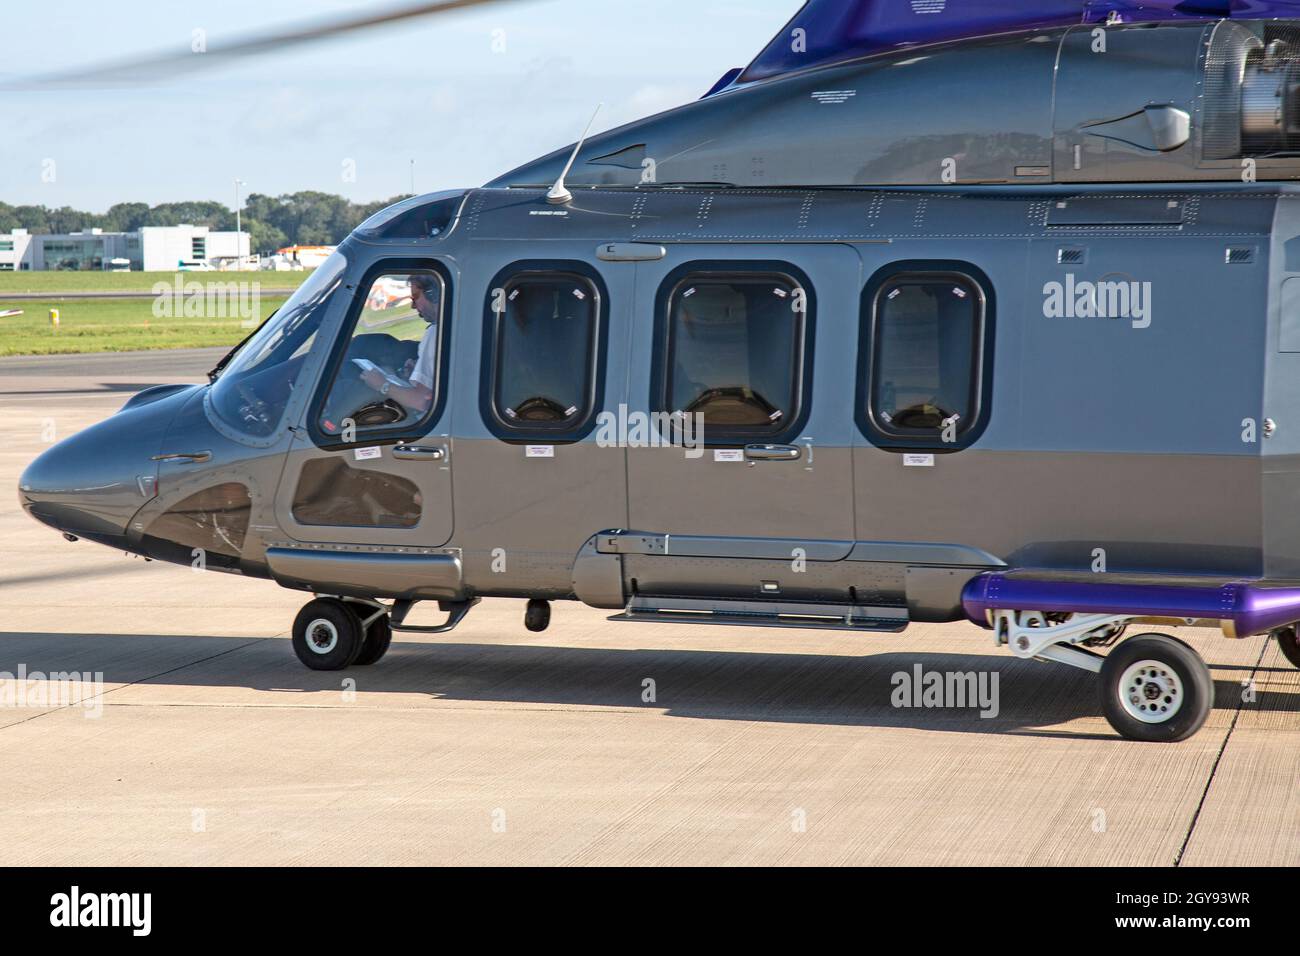 Un Agusta Westland A139, helicóptero privado ejecutivo en el aeropuerto Bristol Lulsgate, Inglaterra. Foto de stock